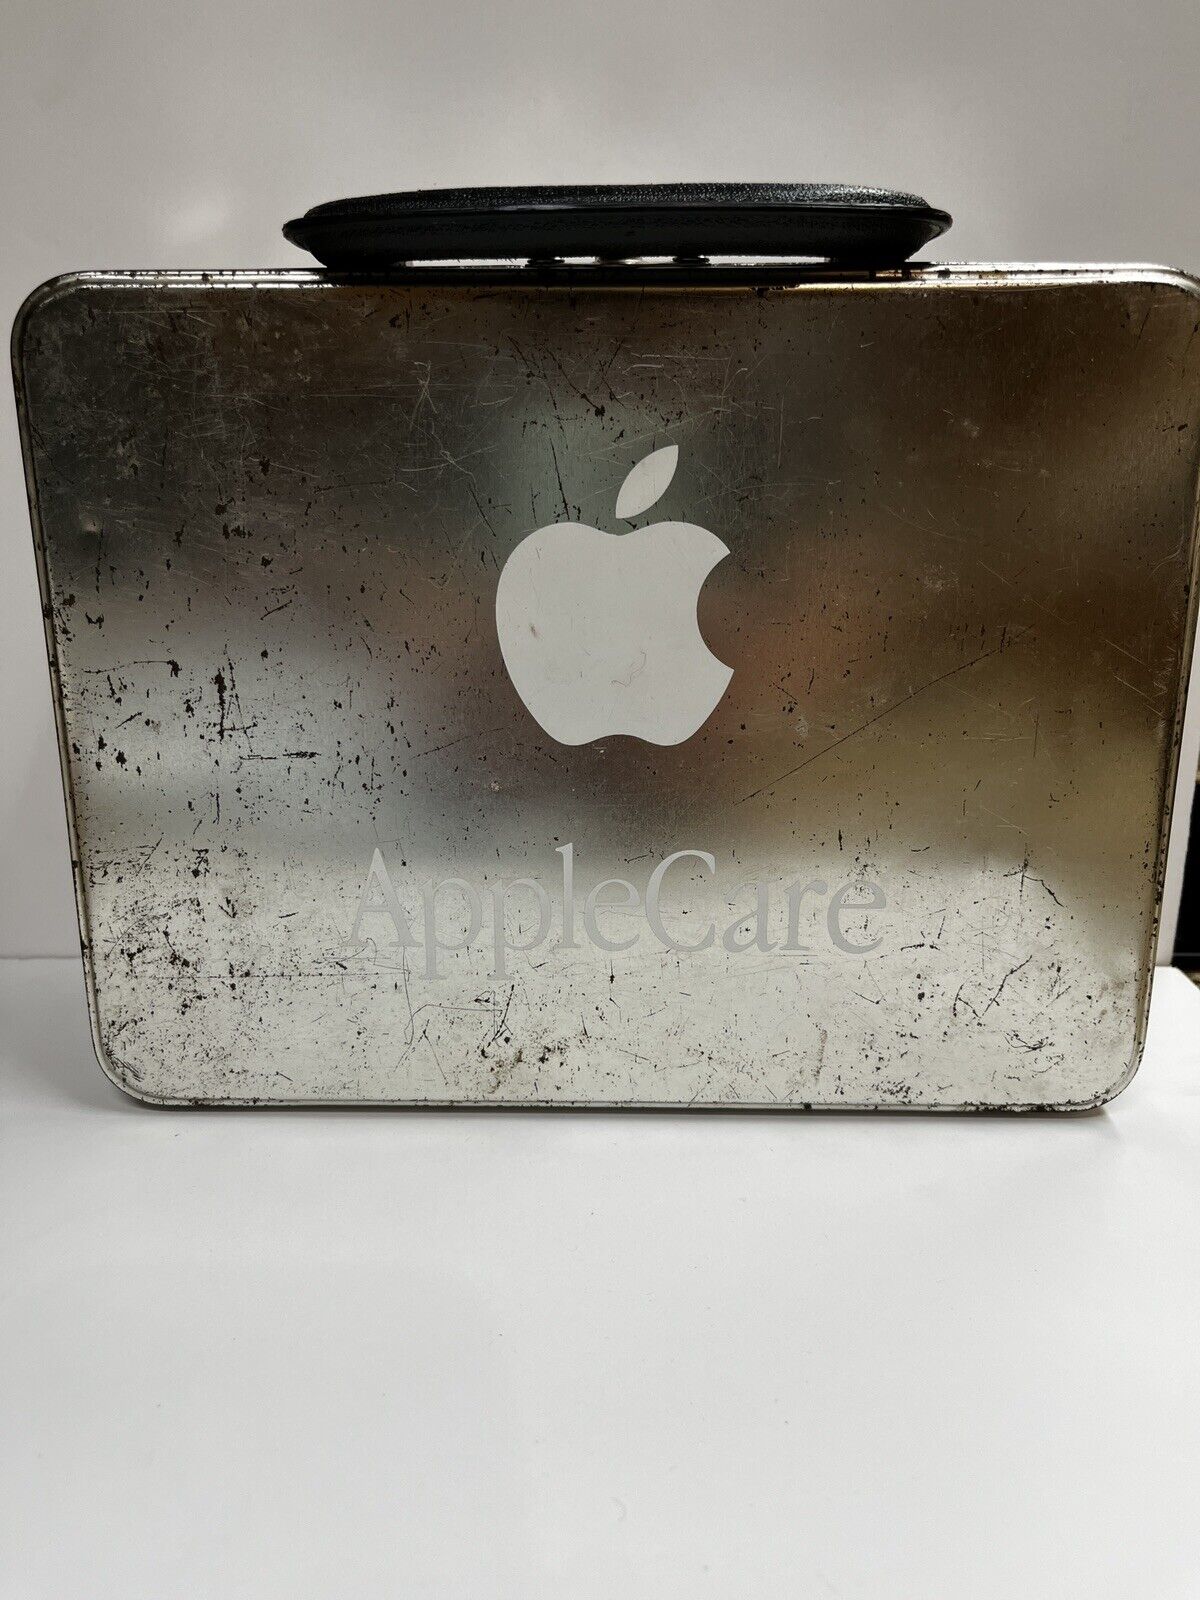 Original￼ AppleCare lunchbox Super Rare Vintage Make Me A Offer